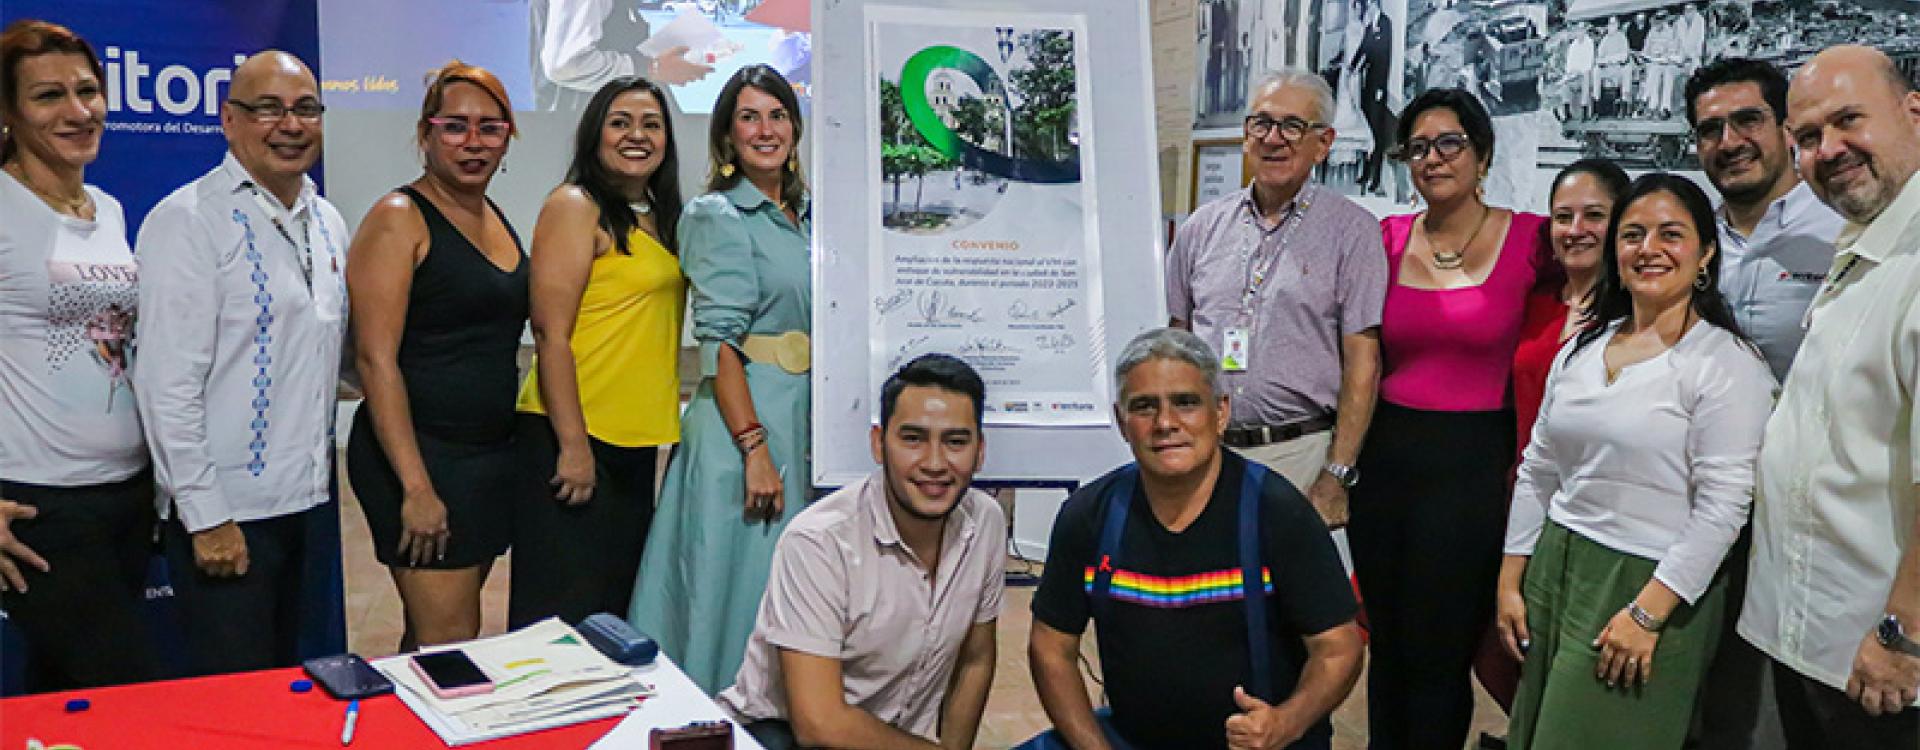 Proyecto de respuesta al VIH conectará vidas en la frontera colombo-venezolana 